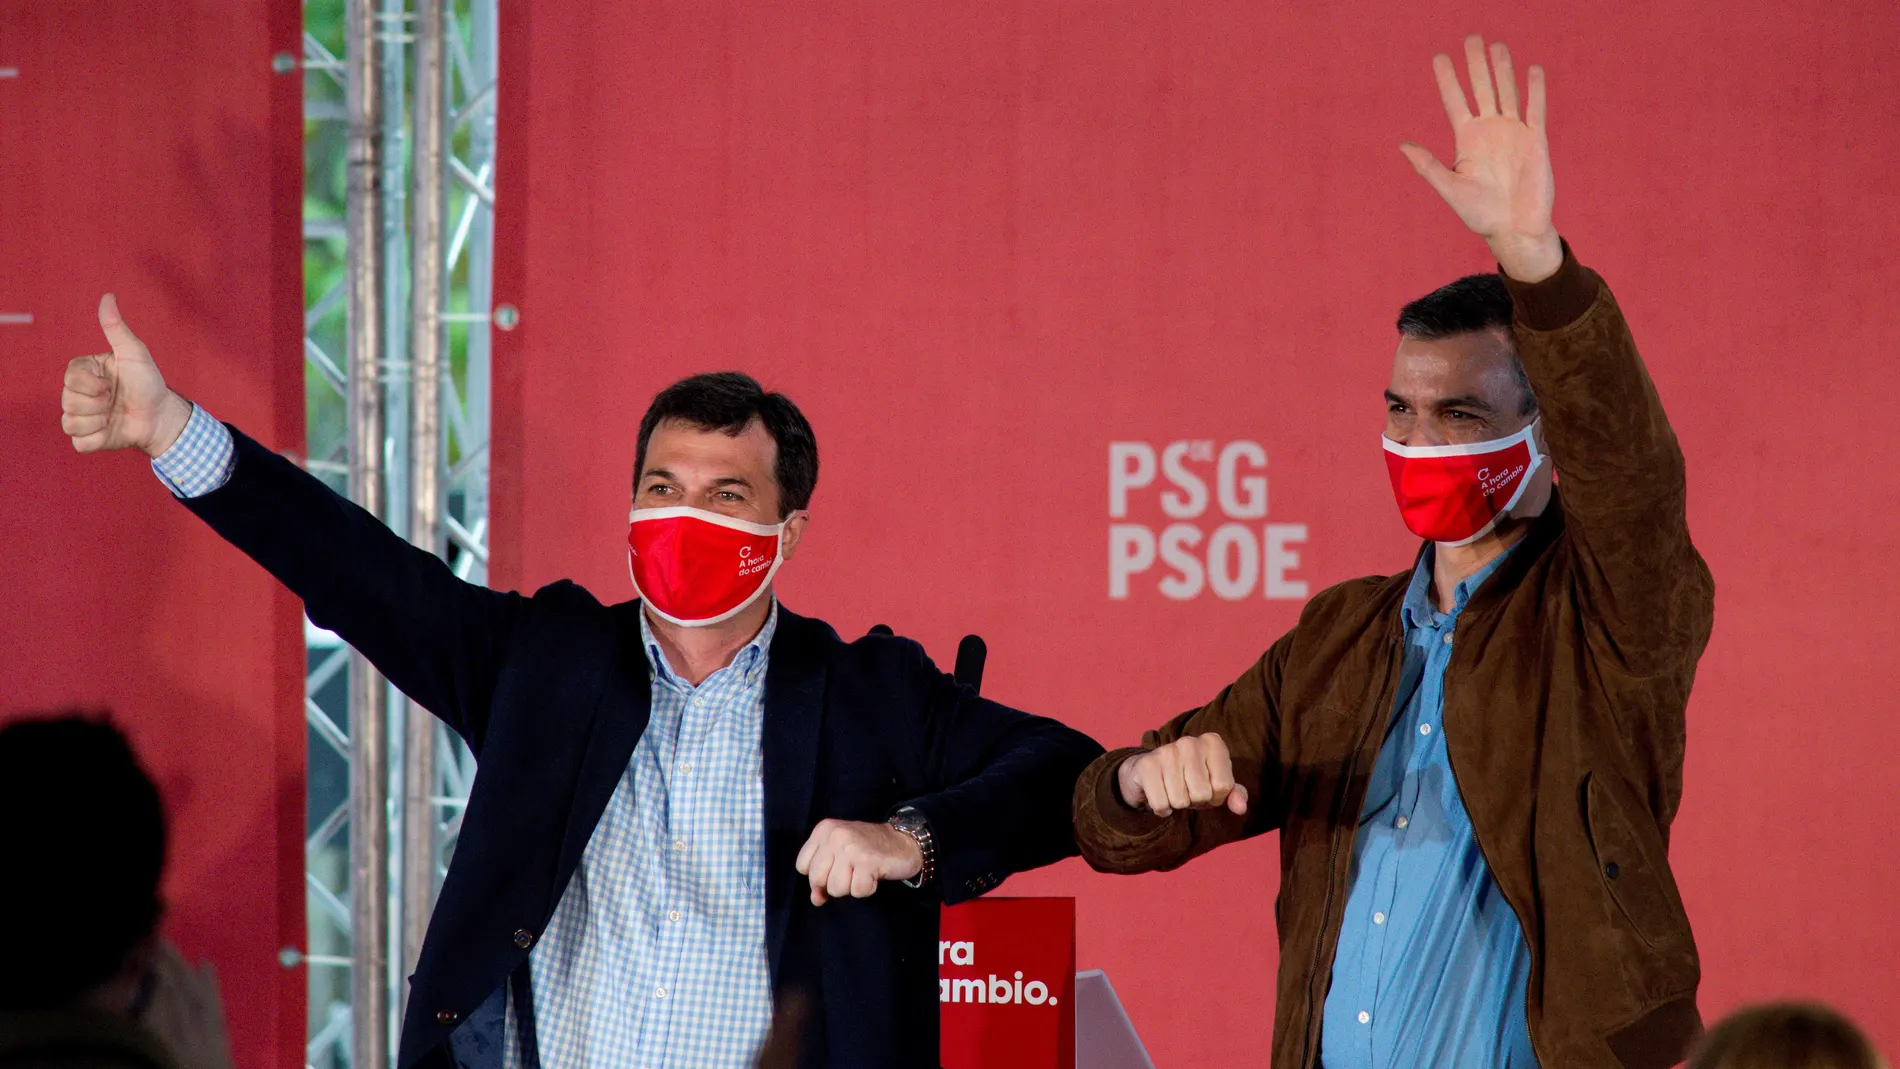 Acto político de las elecciones gallegas en Ourense